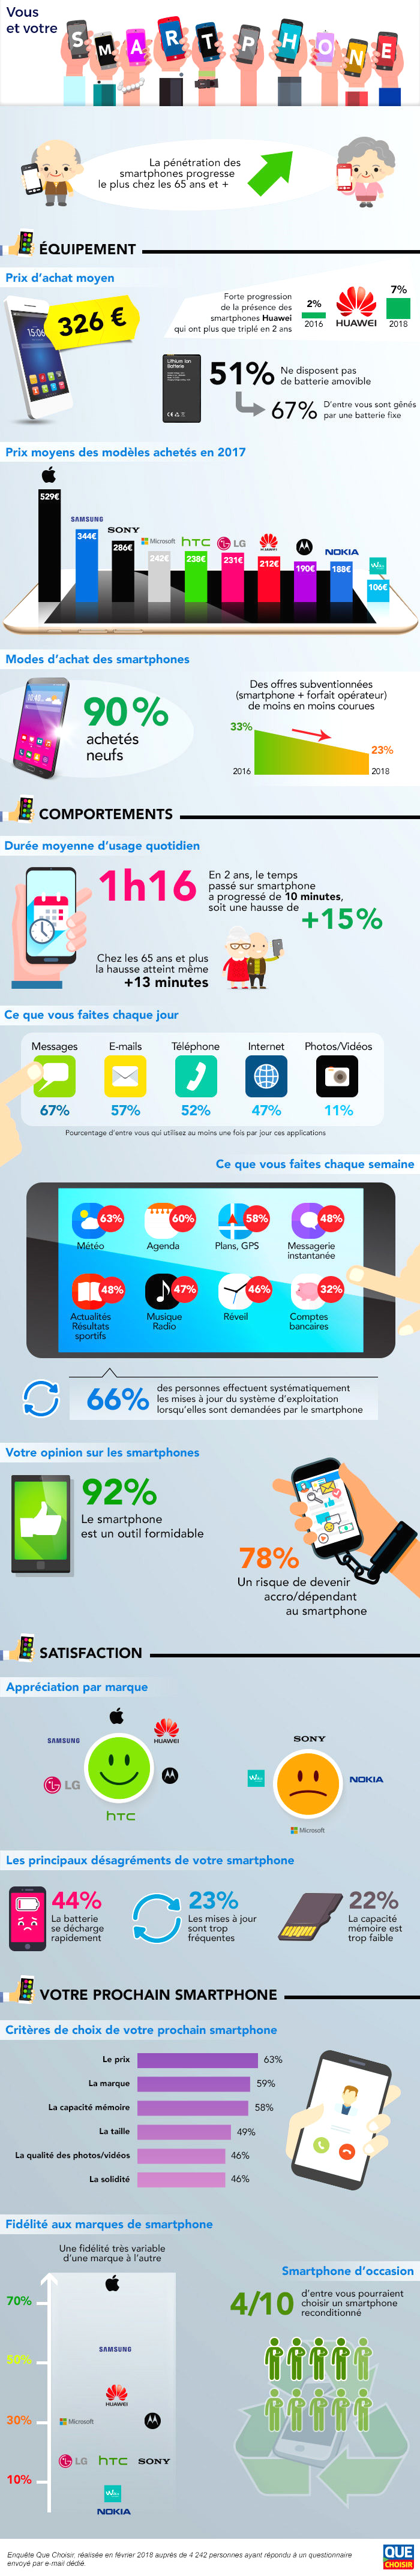 Les Français dépensent 326 euros en moyenne pour acheter un nouveau smartphone